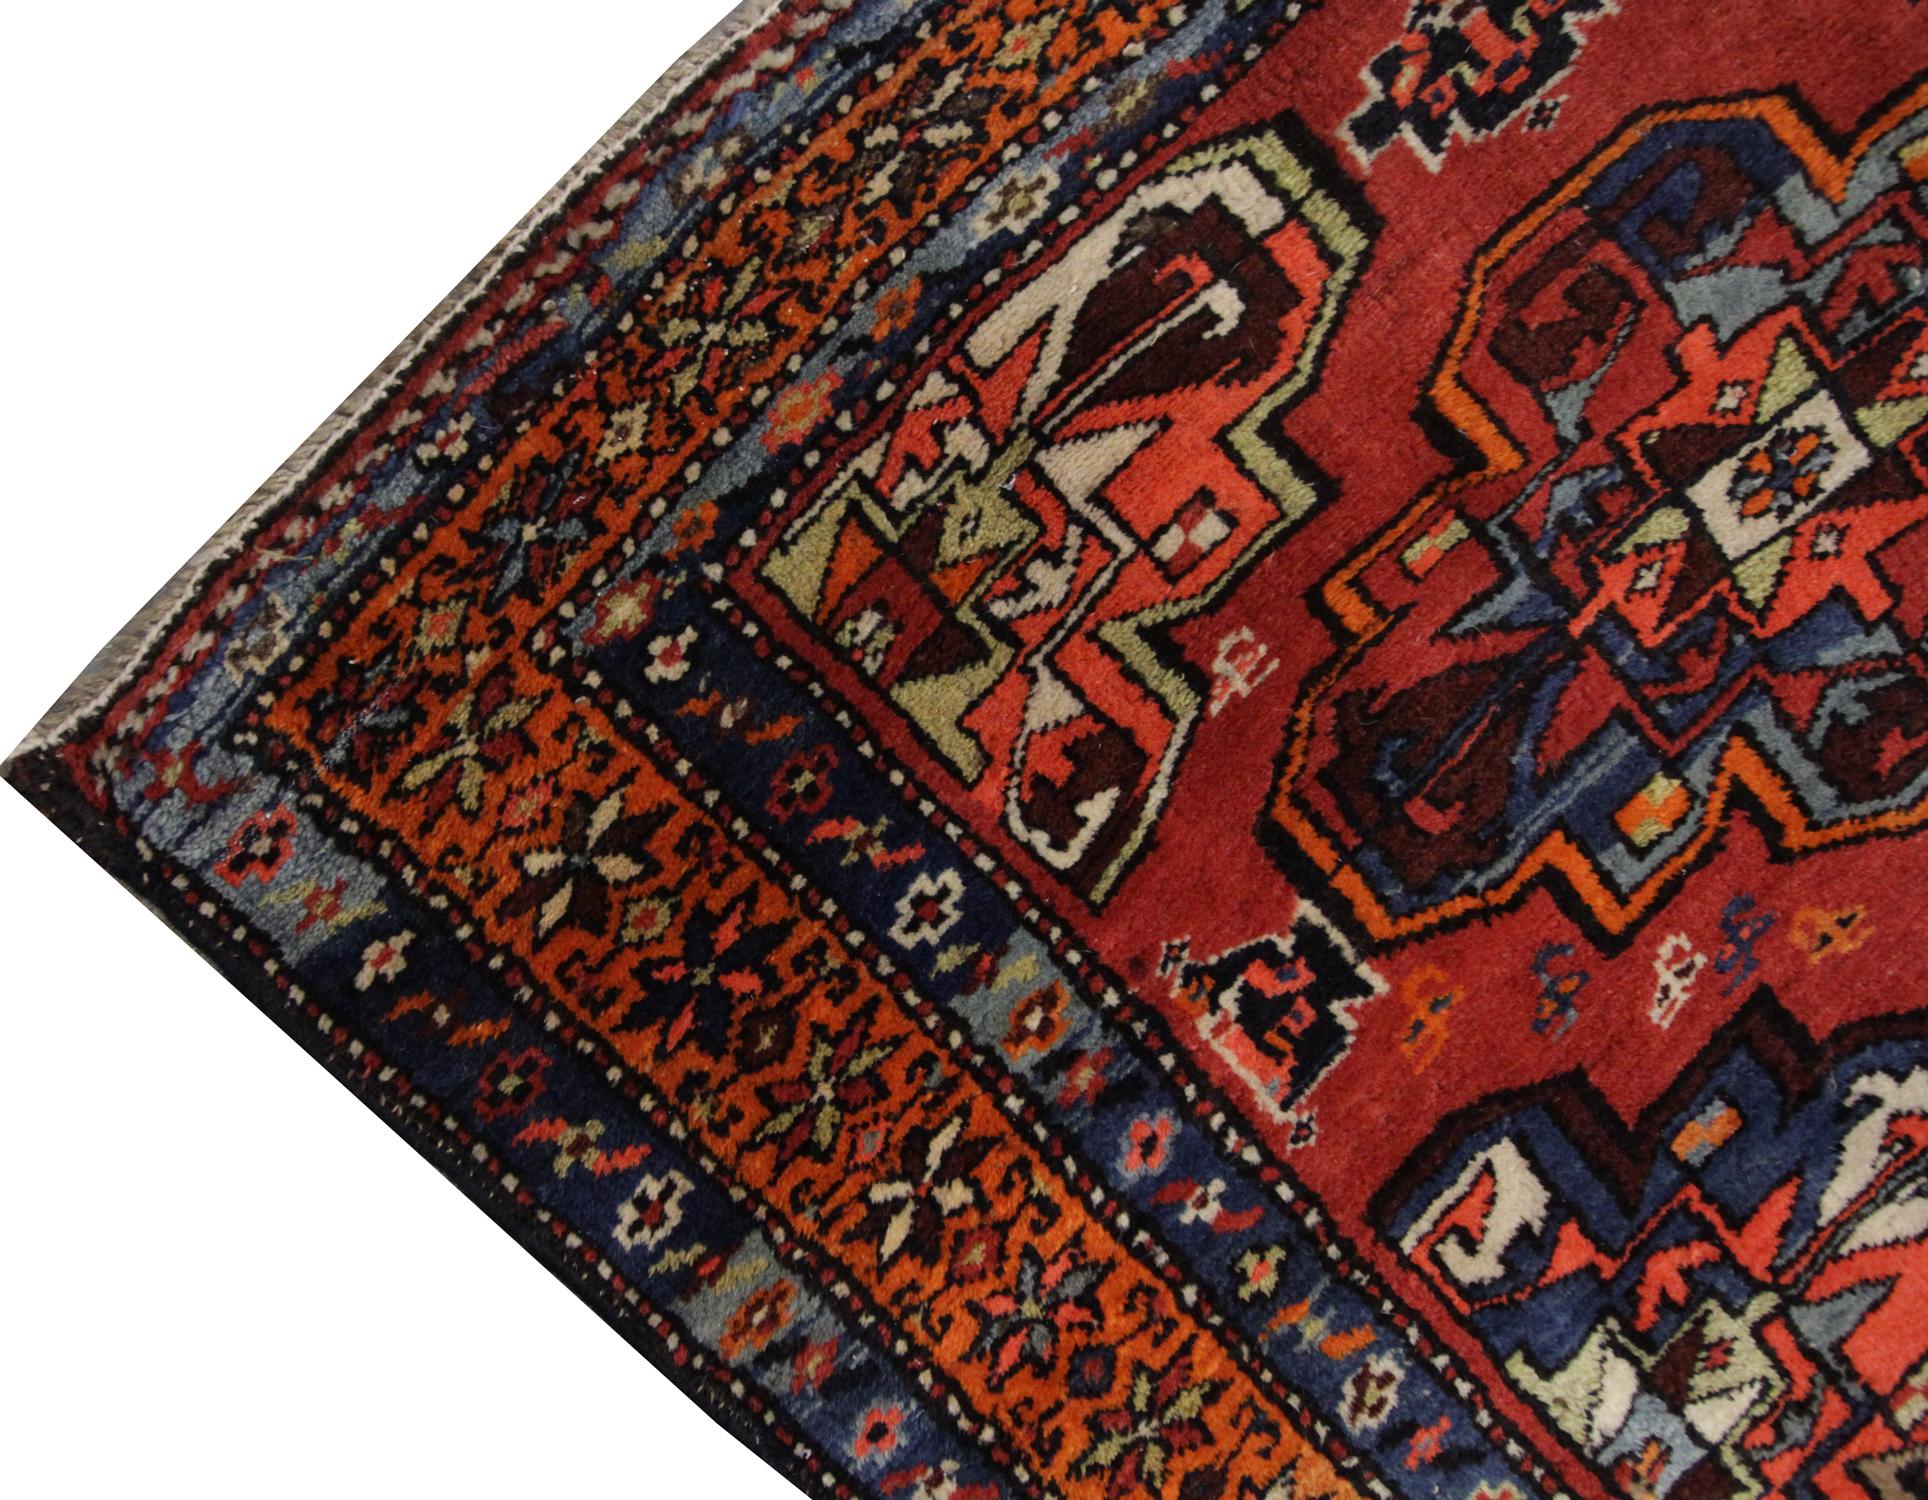 Un tapis fait à la main avec un motif répétitif de dessins géométriques coule au centre de ce tapis oriental, avec des couleurs vertes, bleues et brunes contrastant doucement avec le fond orange foncé, entouré d'une bordure à motif répétitif. Riche